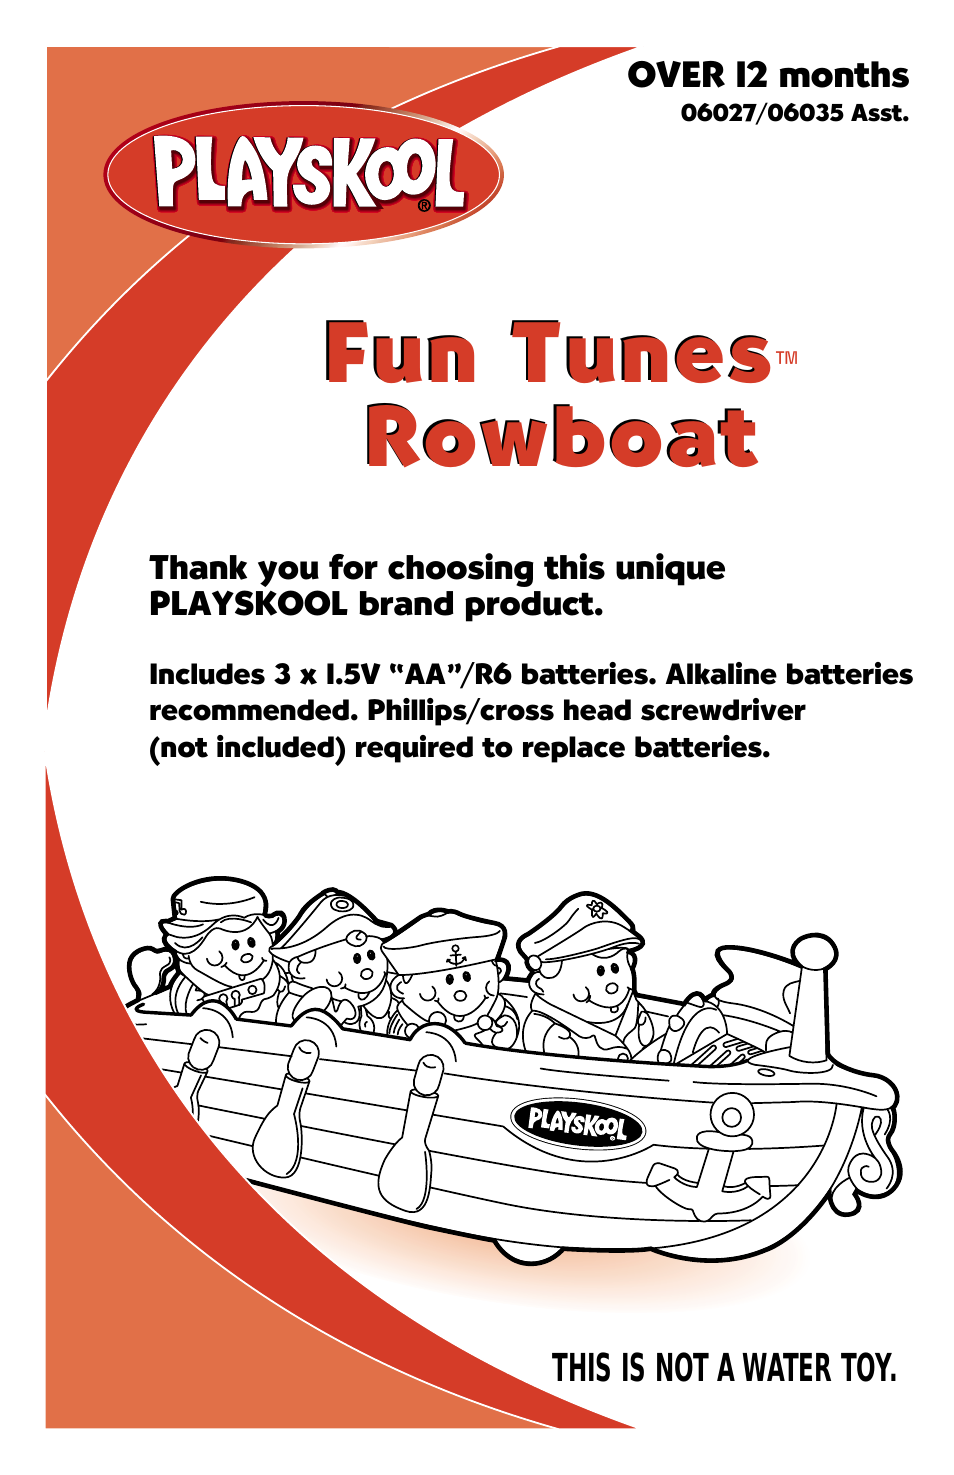 Fun Tunes Rowboat 06027/06035